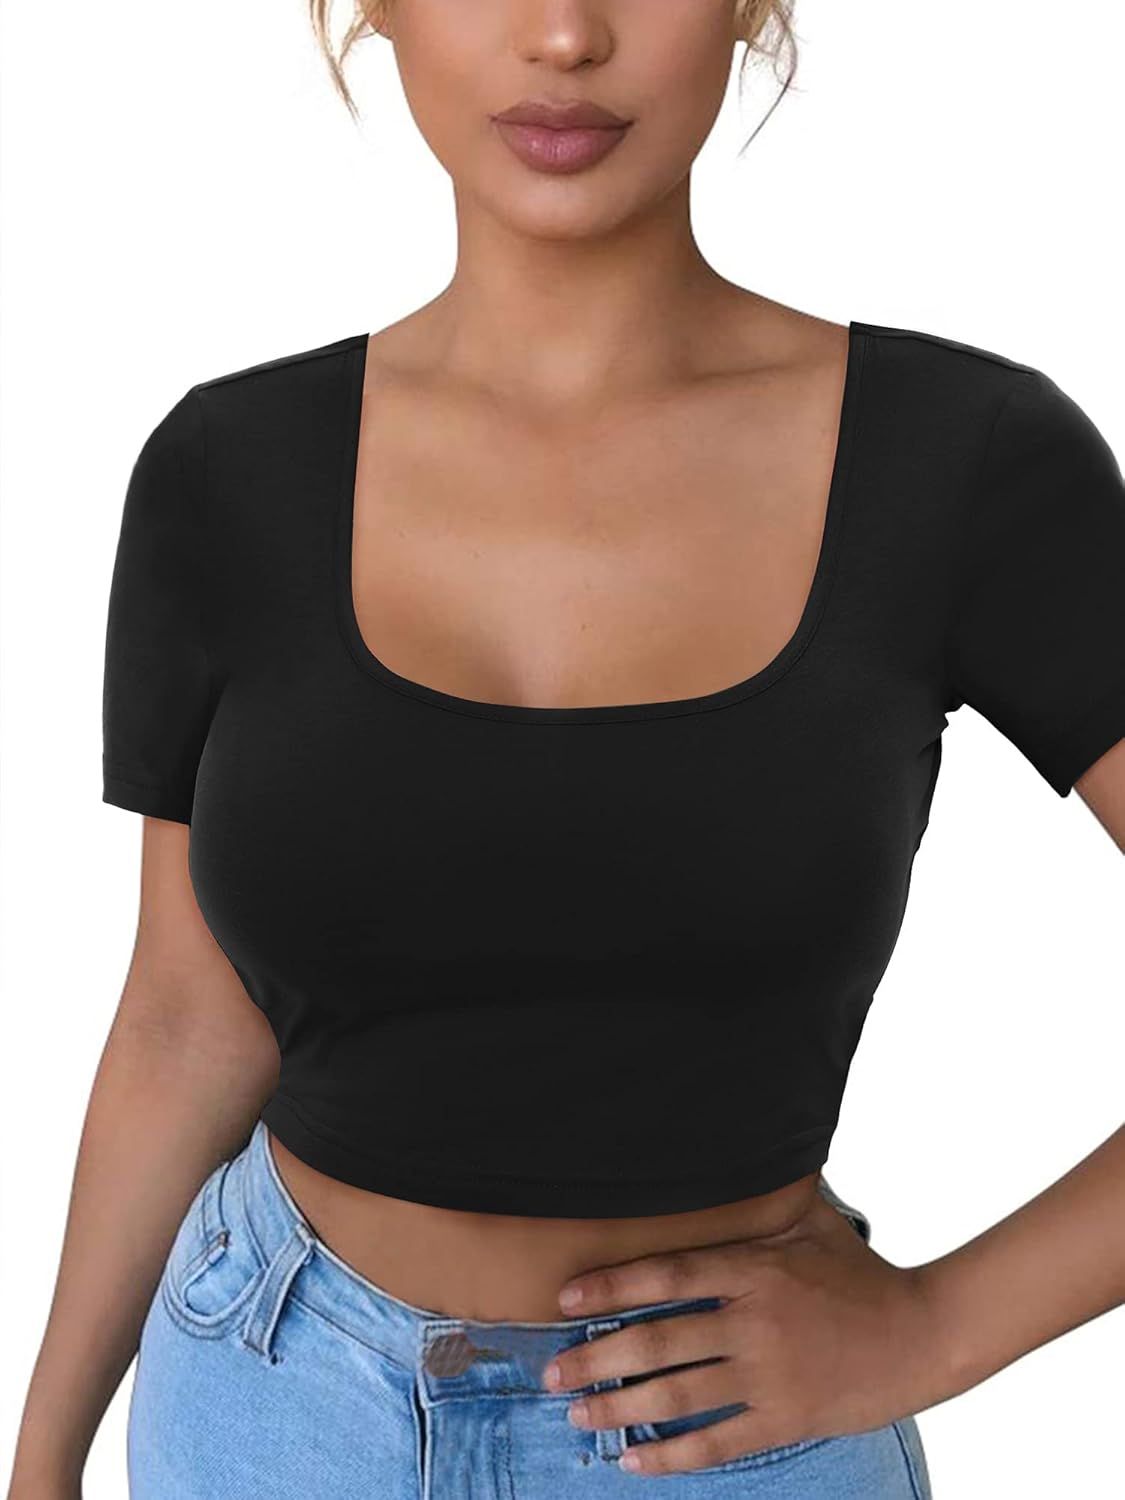 VETIOR Women's Cotton Basic Scoop Neck Crop Top Short Sleeve Tops | Amazon (US)